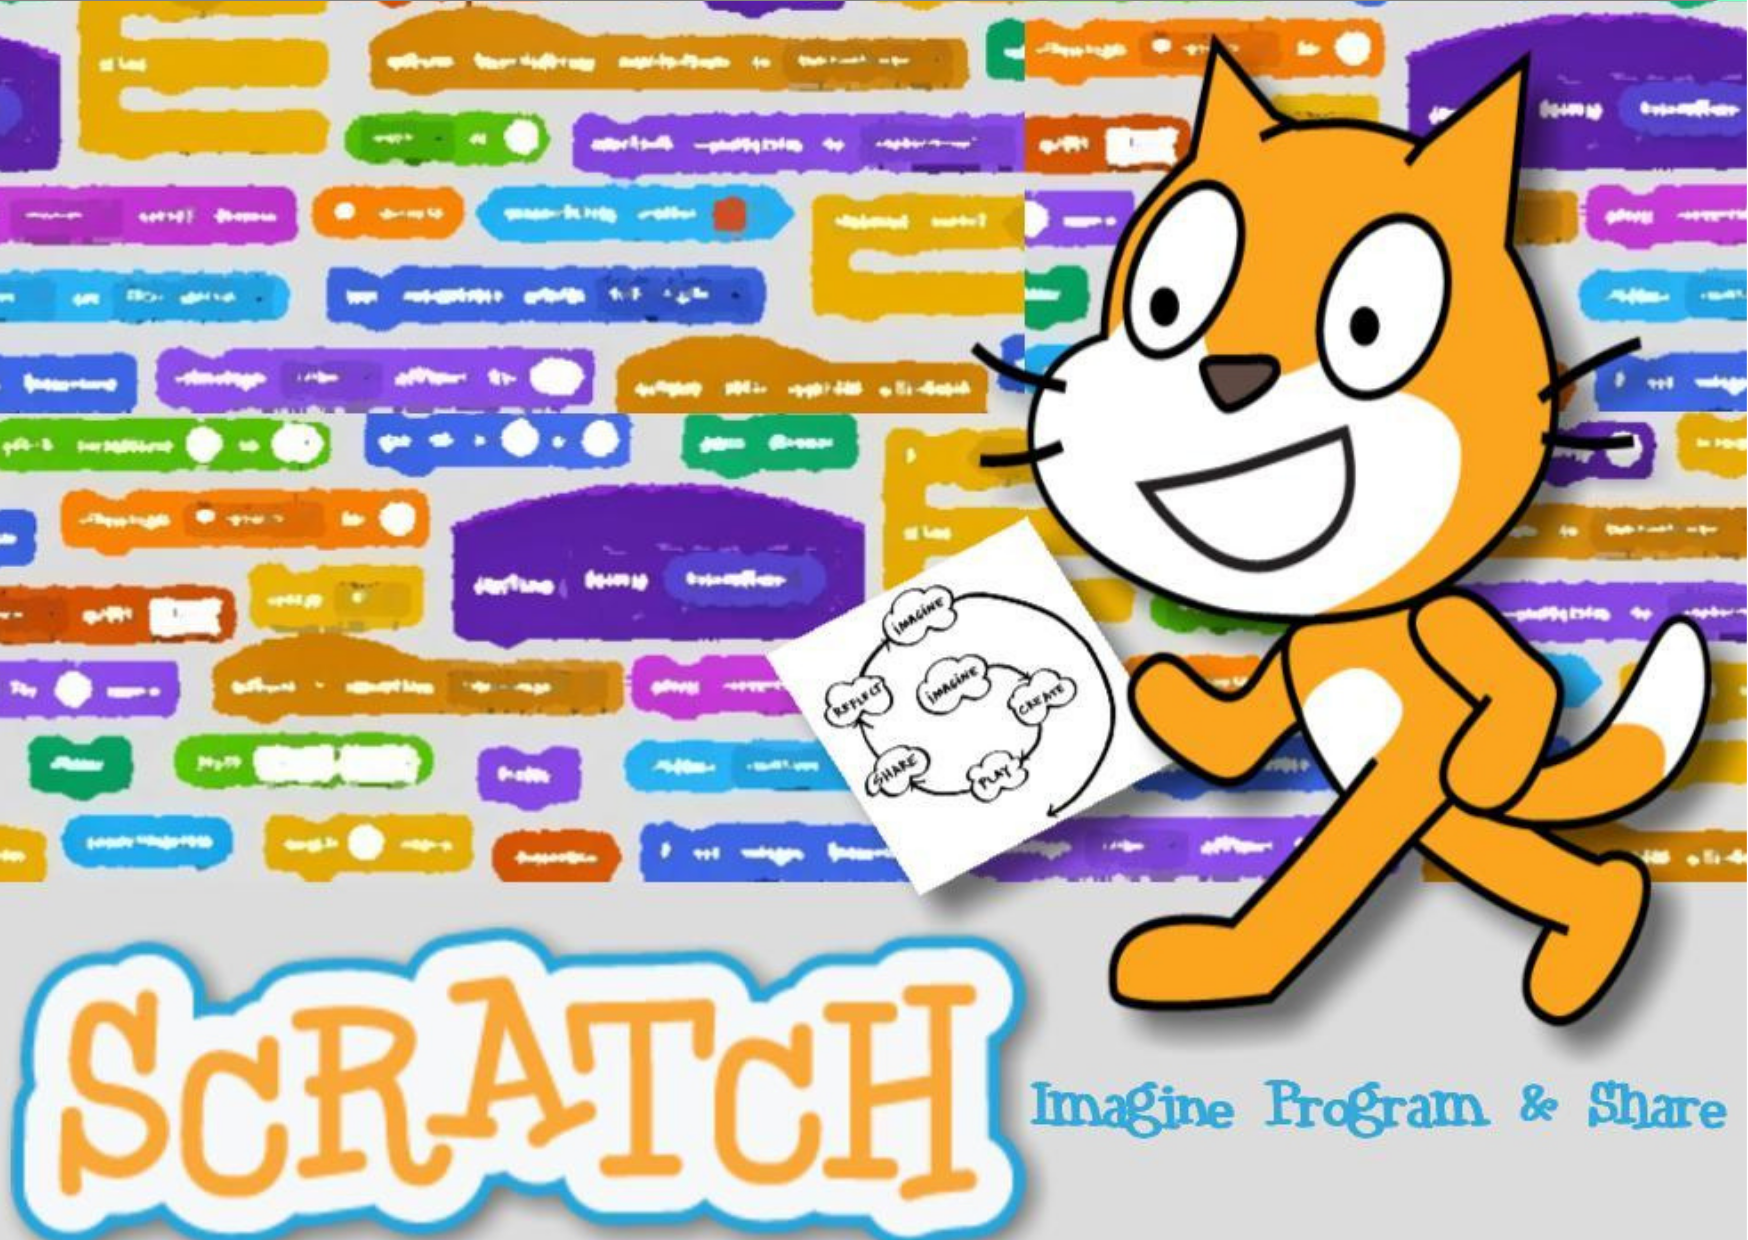 Тумка и скретч. Scratch программирование. Скретч для детей. Среда программирования скретч. Приложение скретч.